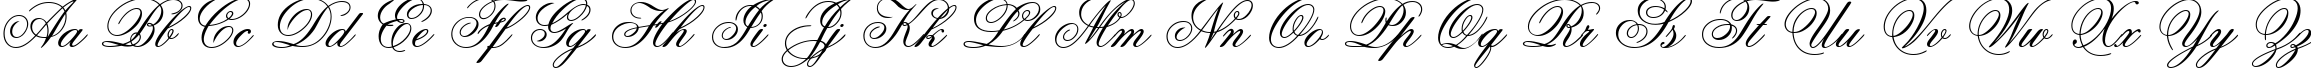 Пример написания английского алфавита шрифтом Old Script